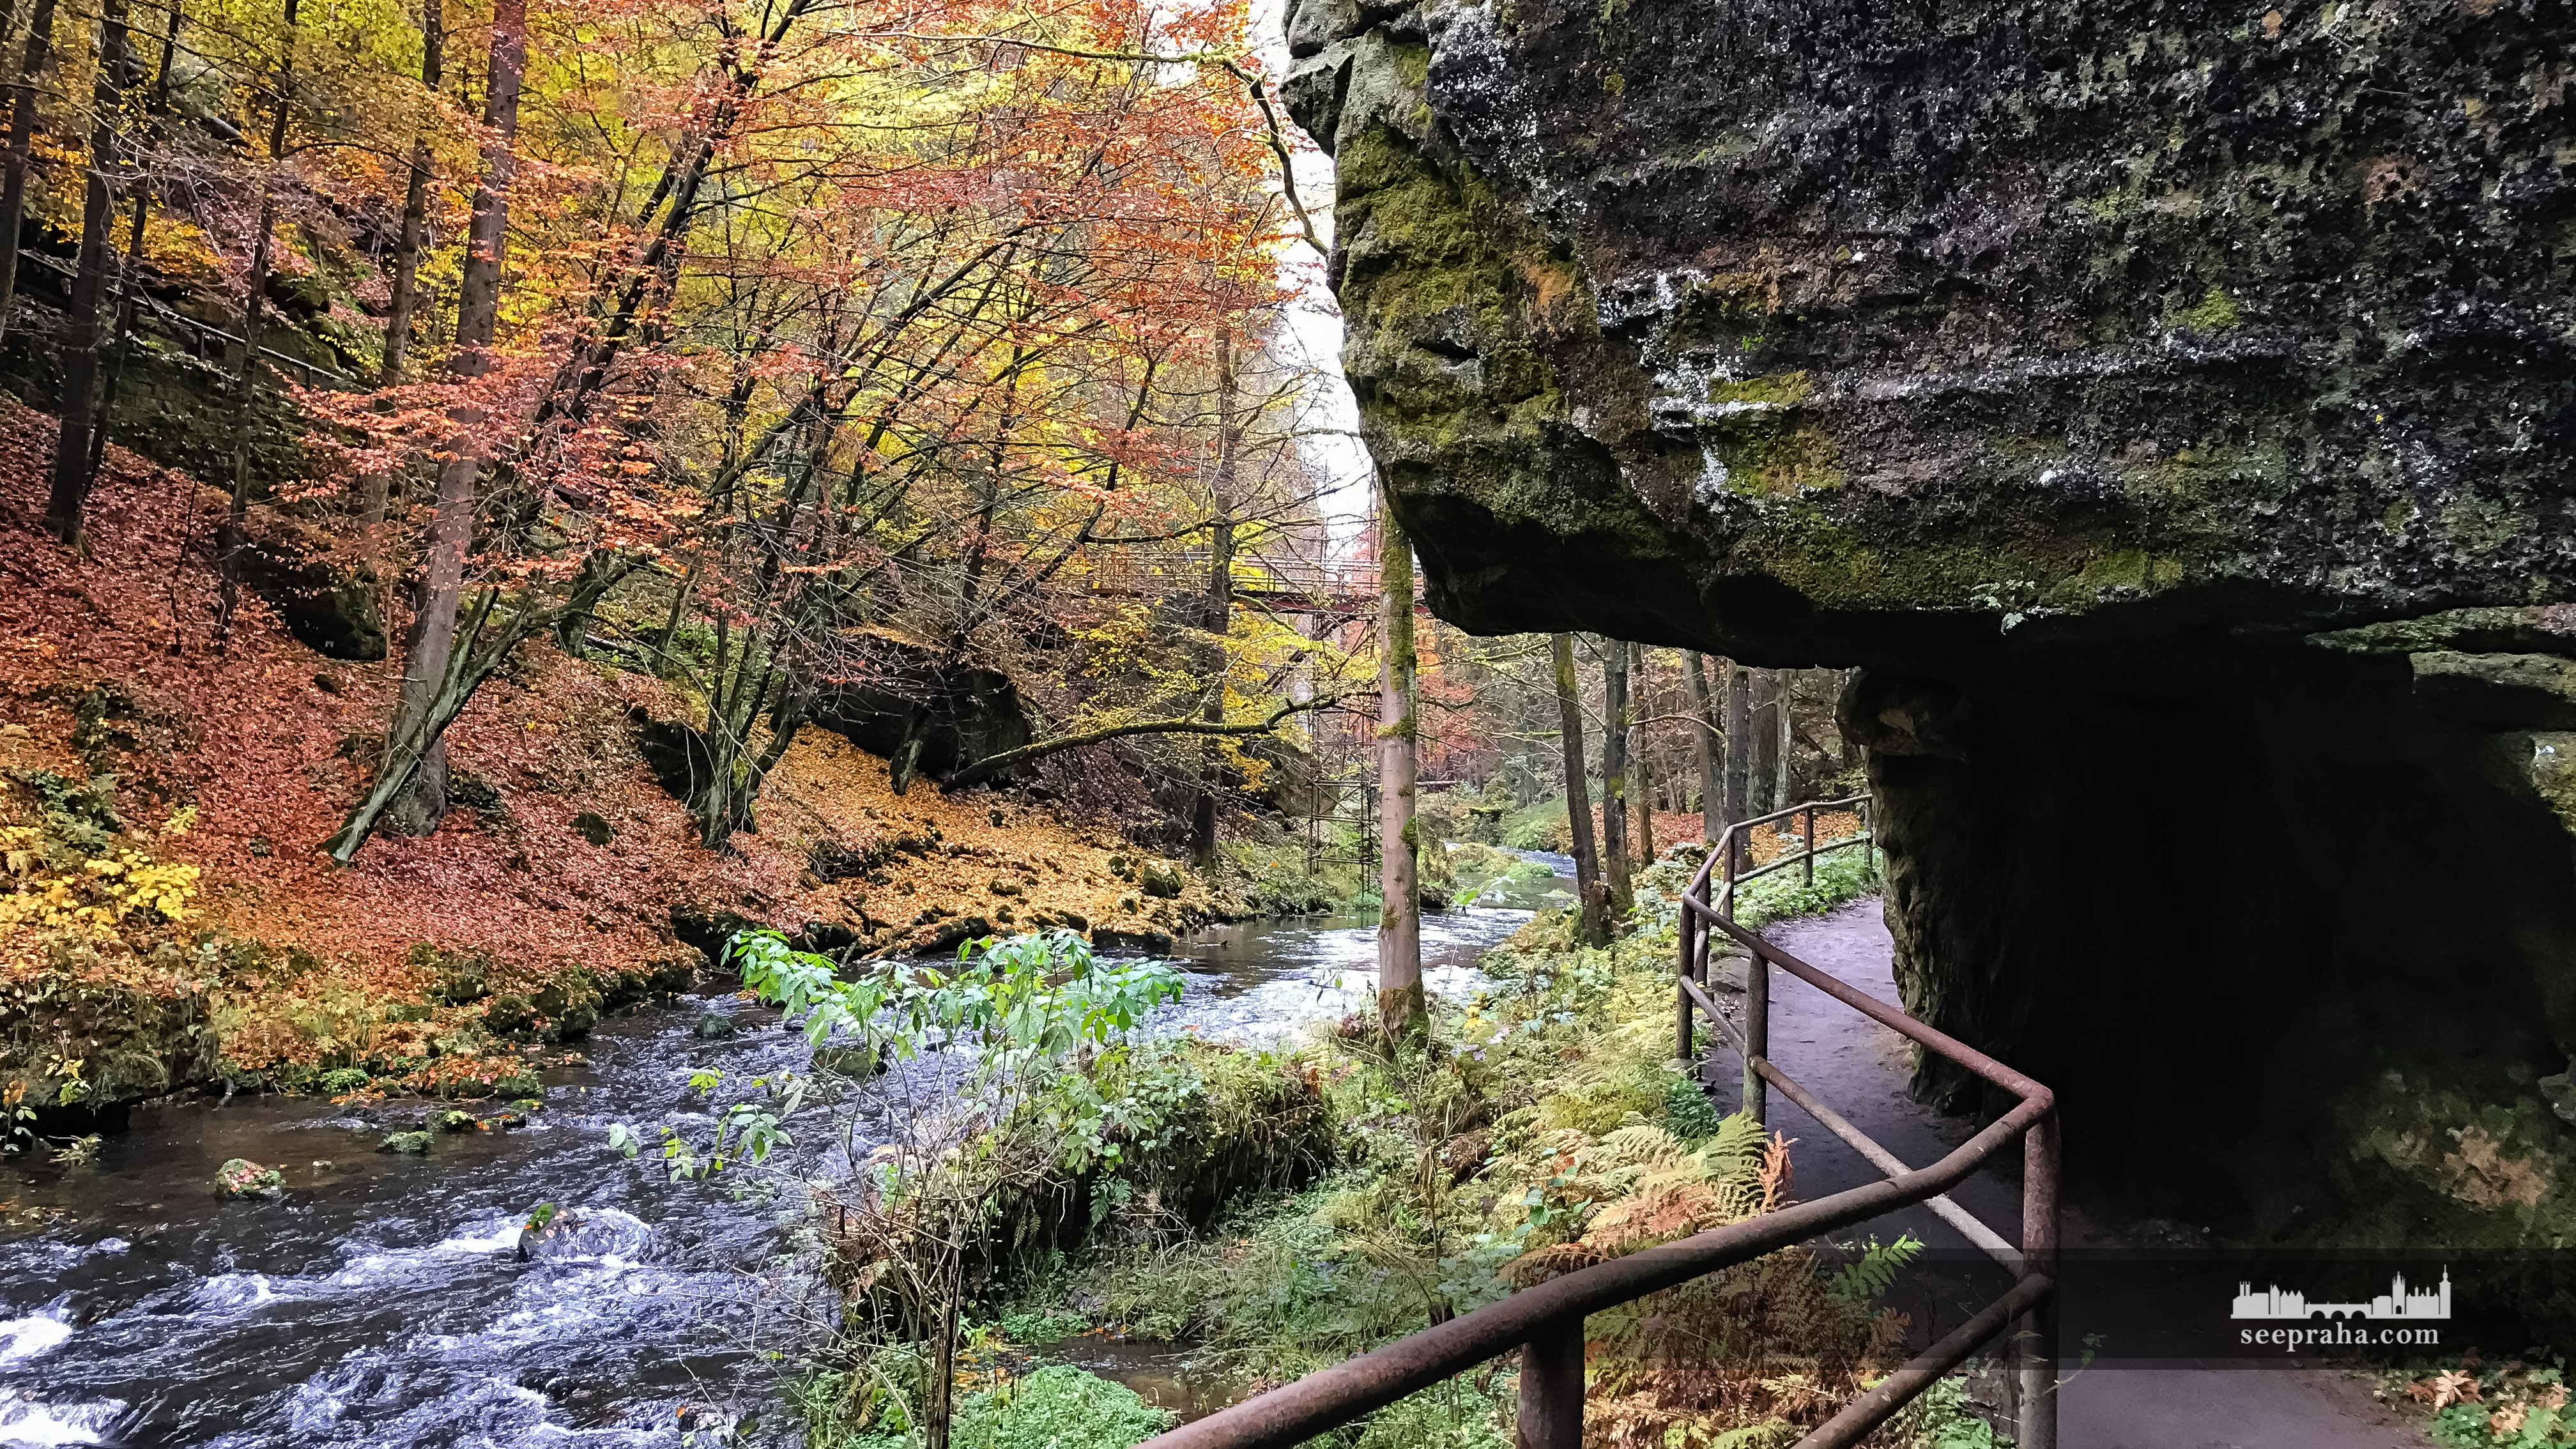 Ущелье Эдмунда и река Каменица, Парк Чешская Швейцария, Чехия